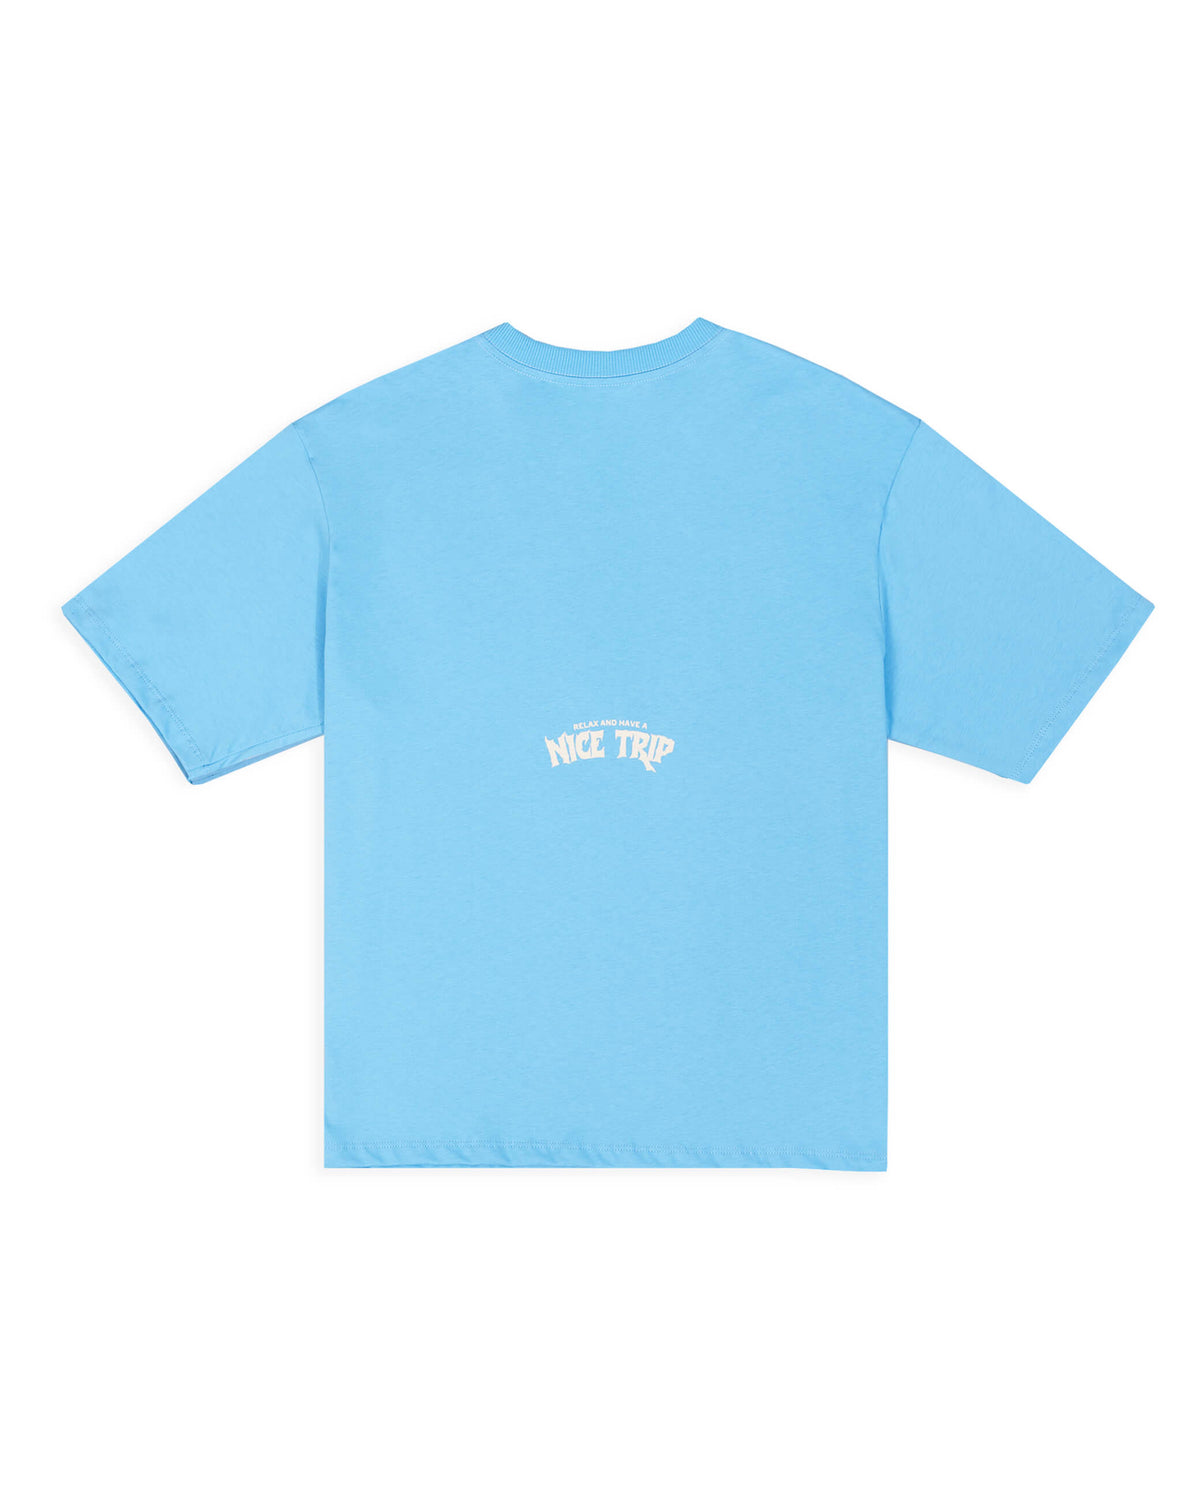 Camiseta box overized pathfinder azul